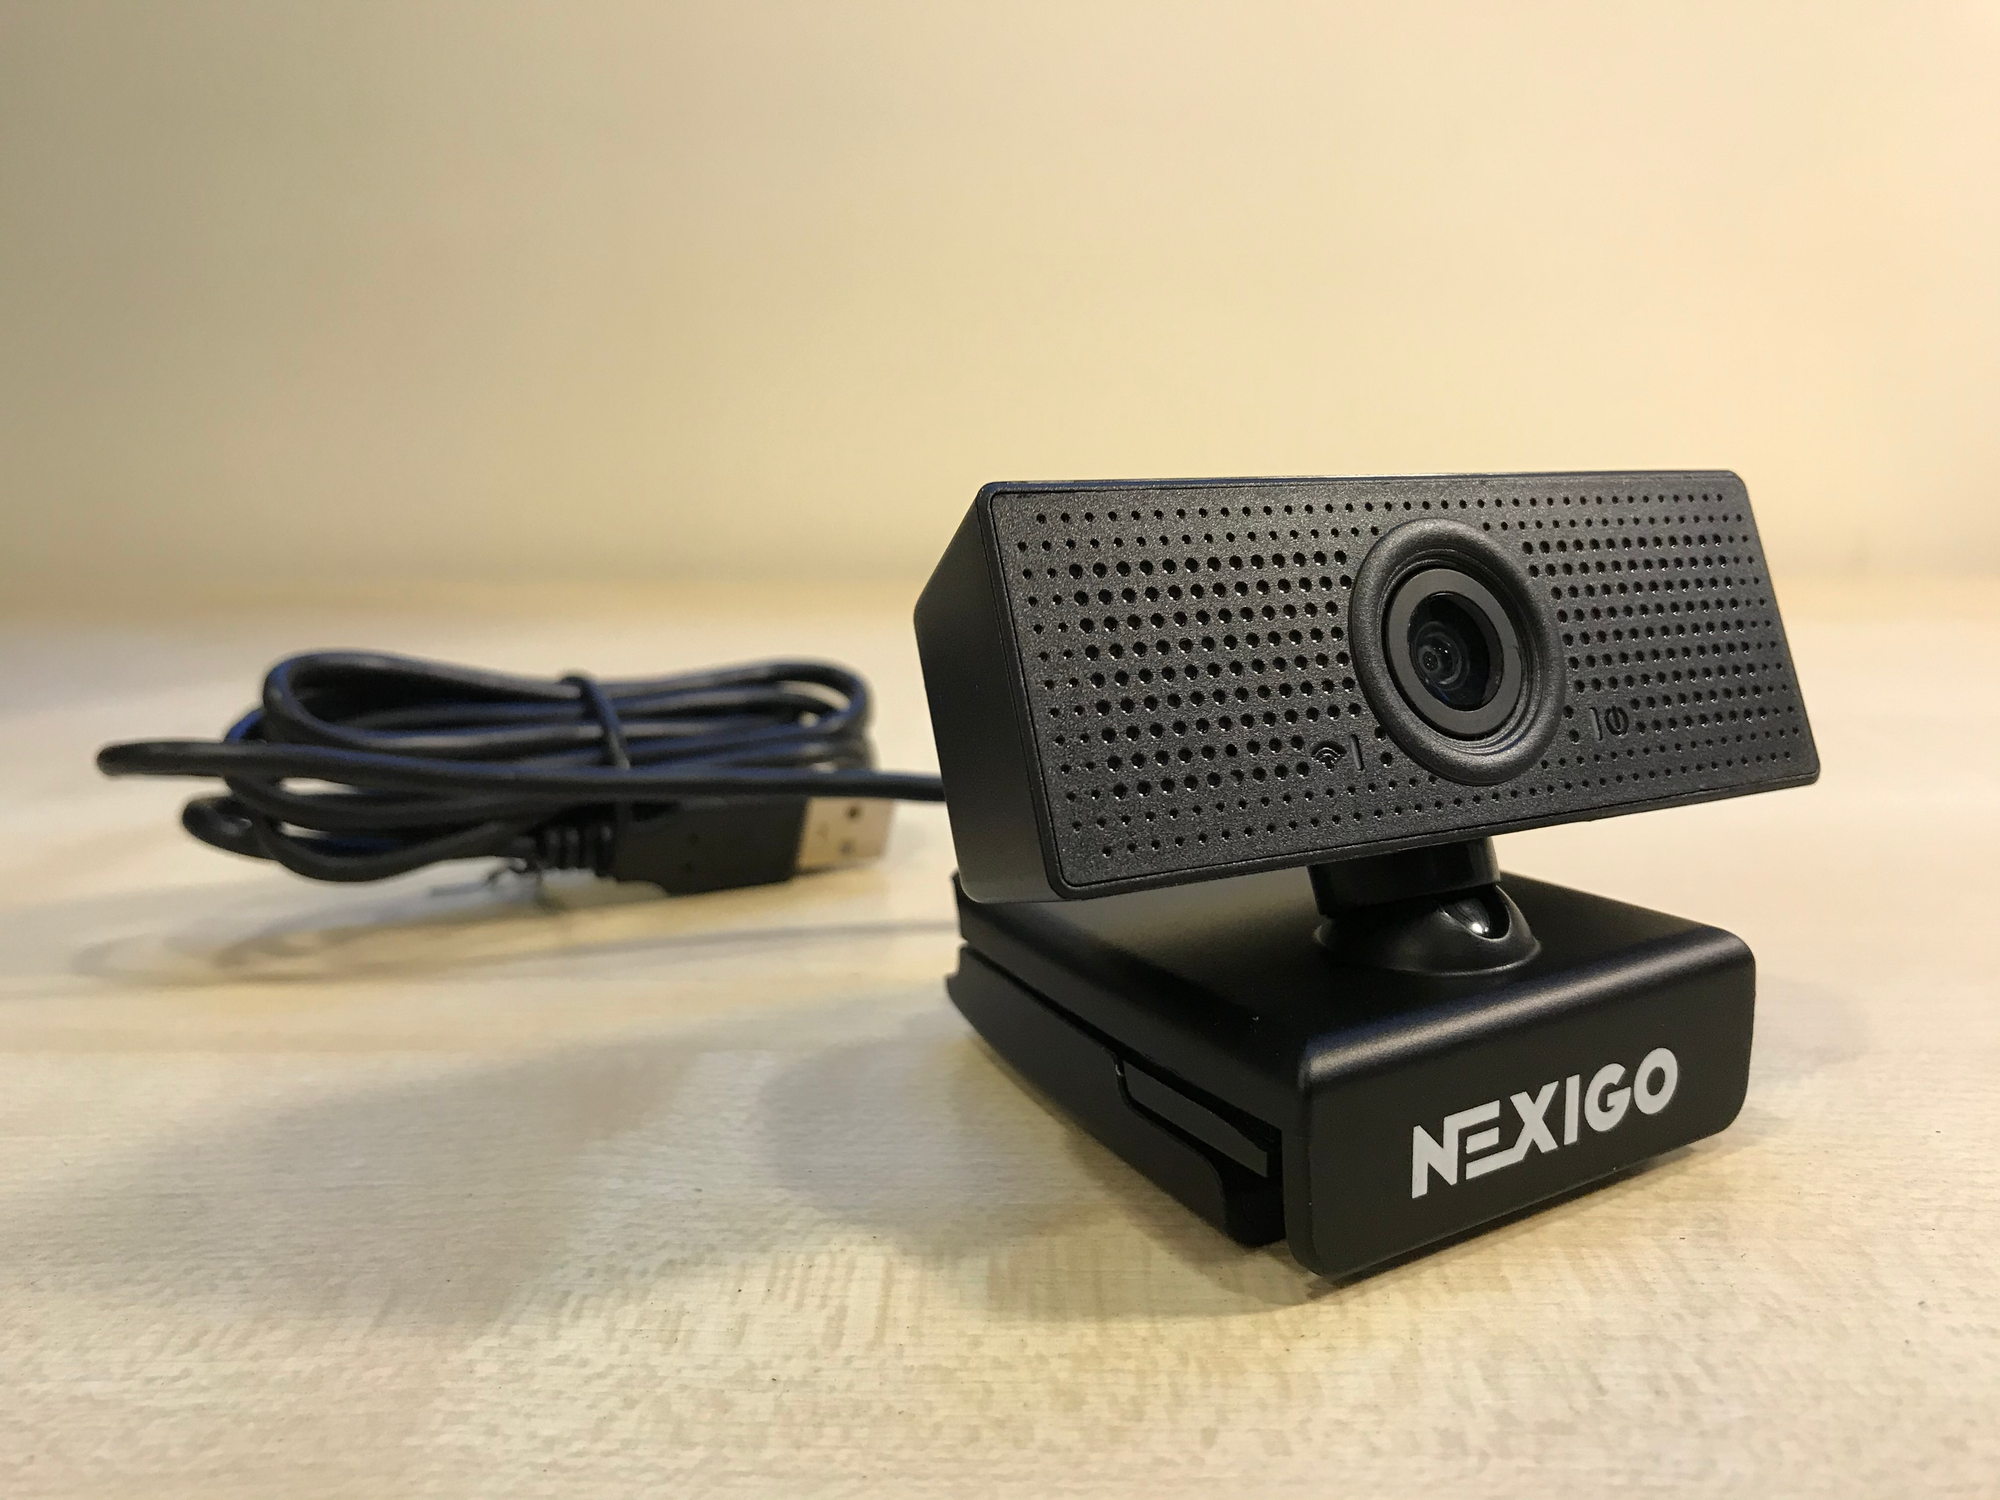 Nexigo N60 1080p Full HD Webcam Review - Budget Wide Angle Lens Camera